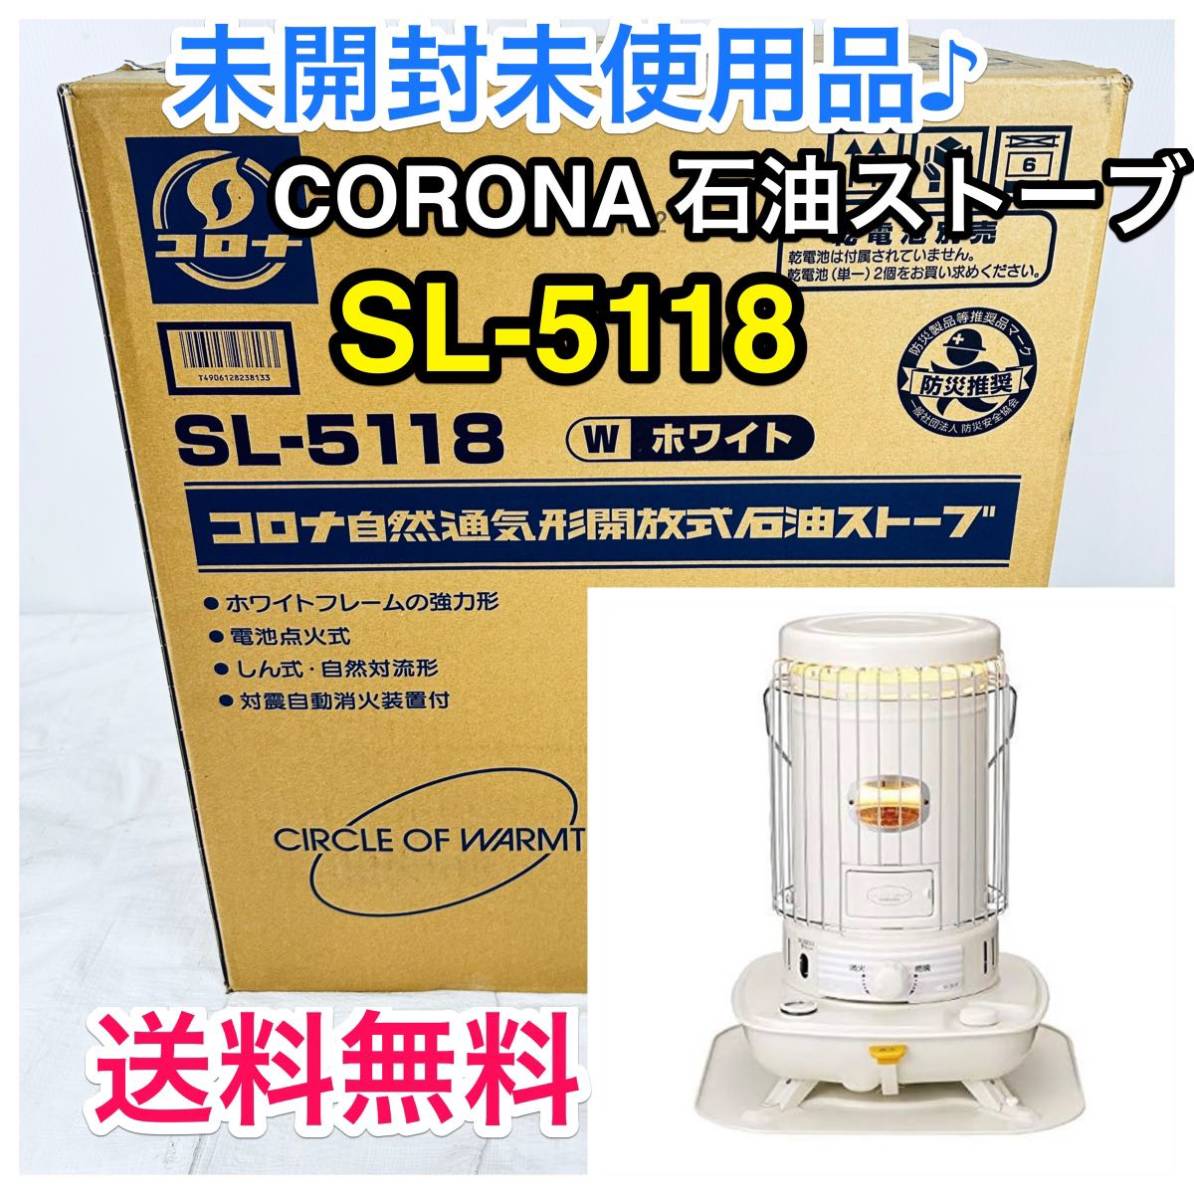 誠実】 CORONA SL-6622 コロナ 石油ストーブ globaltechindia.com